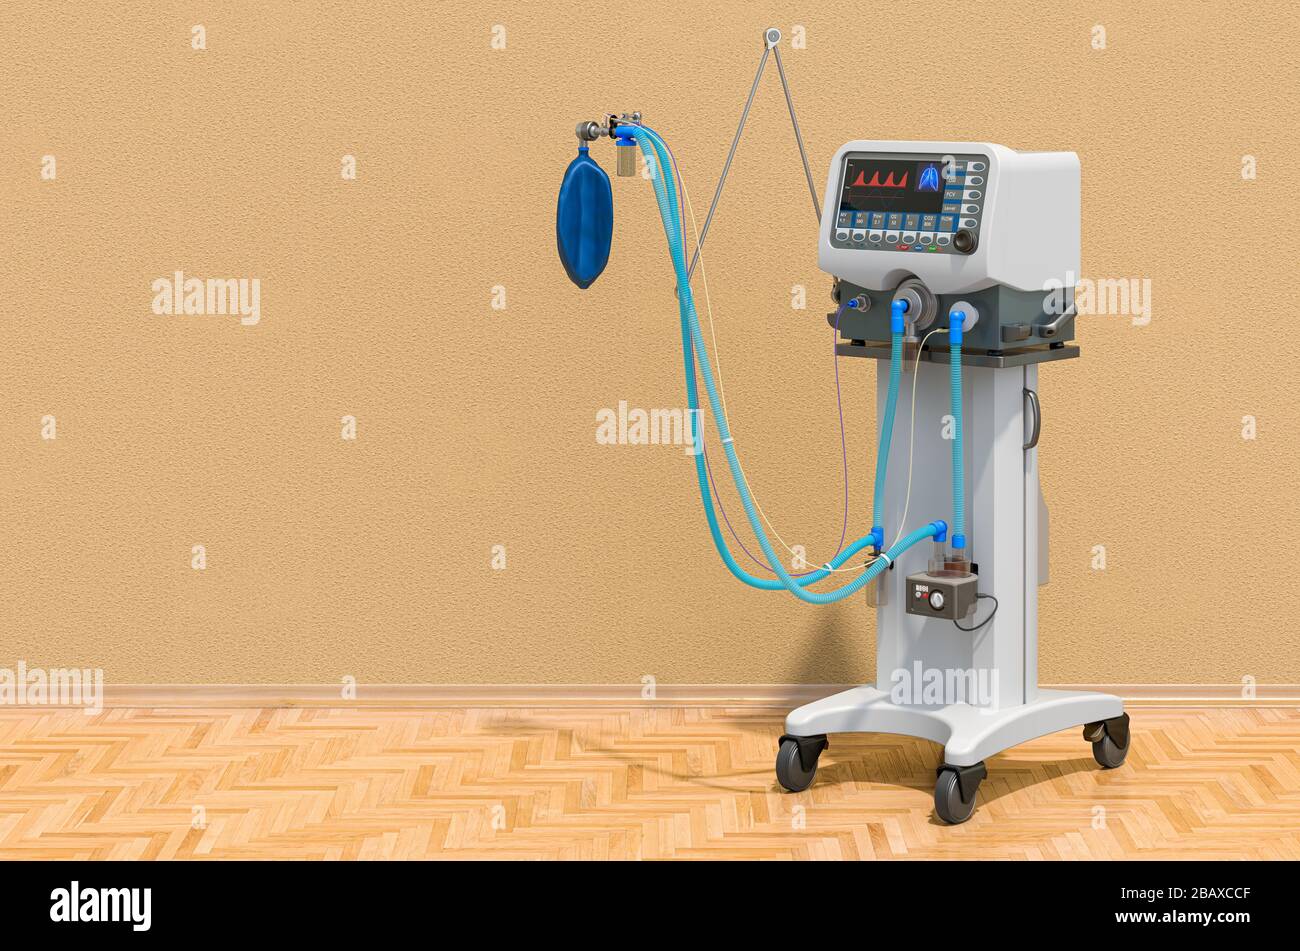 Ventilateur médical dans la pièce sur le parquet, rendu tridimensionnel Banque D'Images